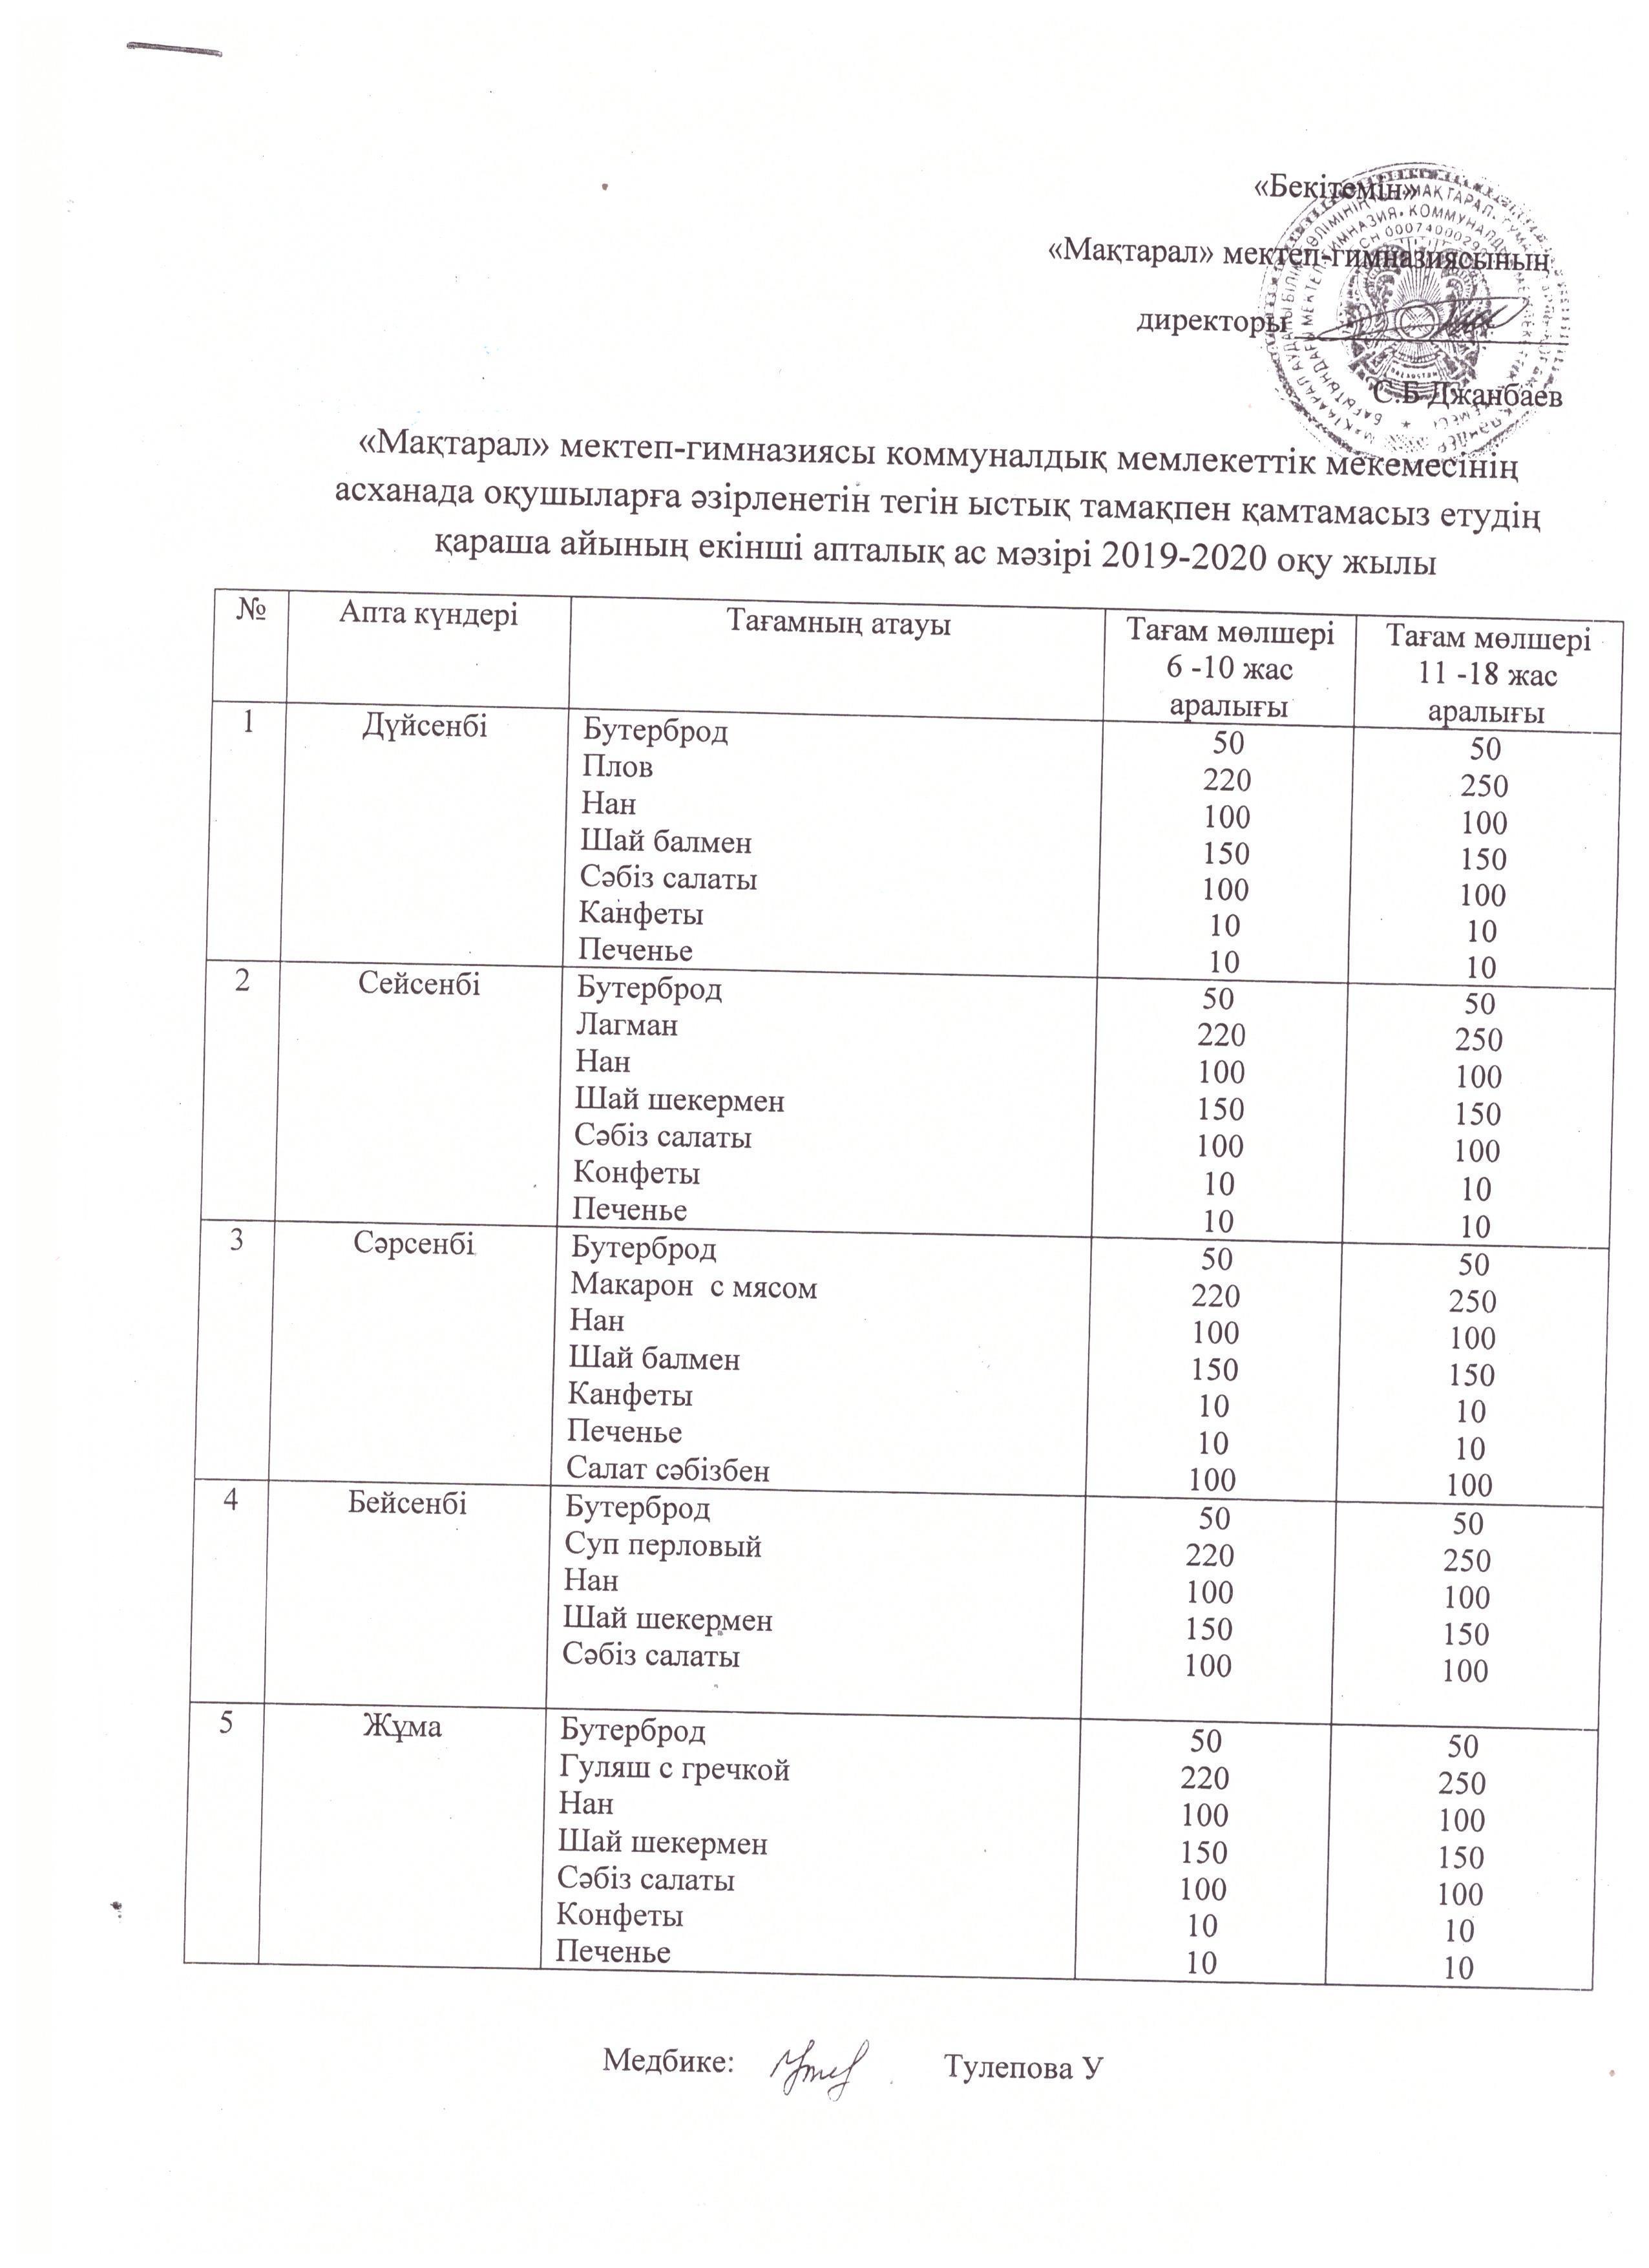 "Мақтарал" мектеп-гимназиясы Education Department of Kerbulak districtнің асхана оқушыларға әзірленетін тегін ыстық тамақпен қамтамасыз етудің қараша айының бірінші апталық ас мәзірі 2019-2020 оқу жылы